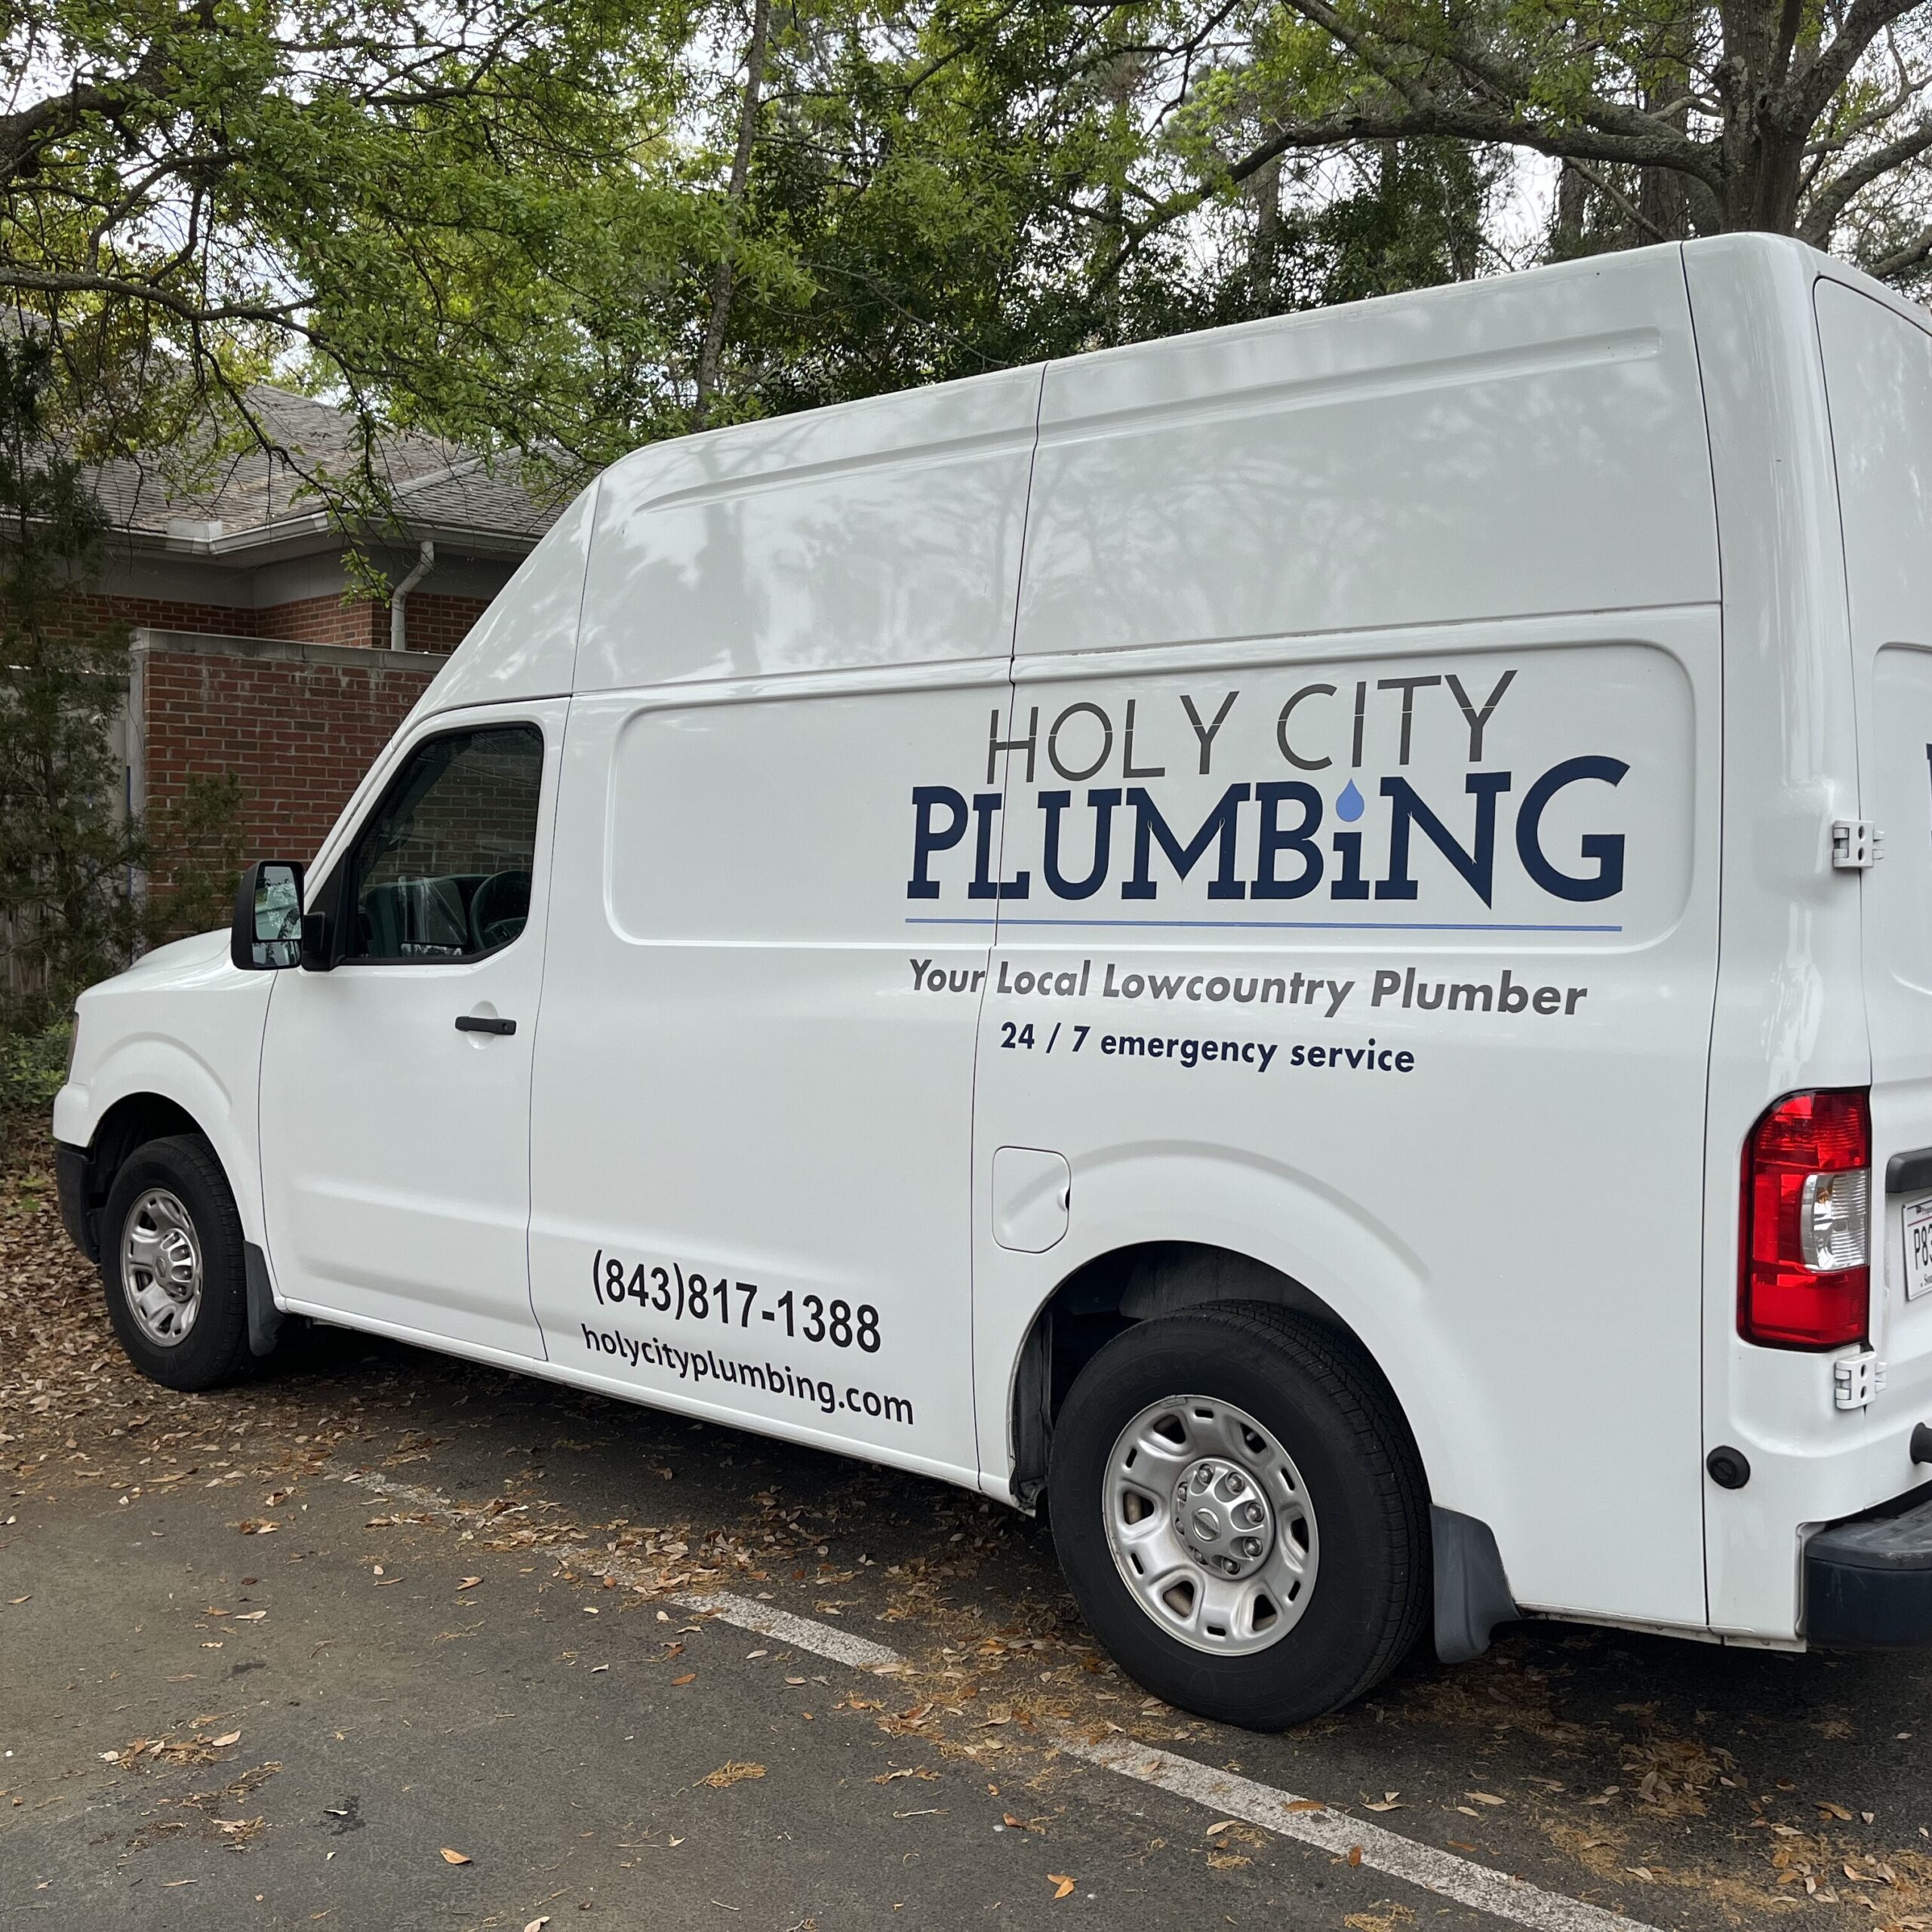 Image of a plumbing van